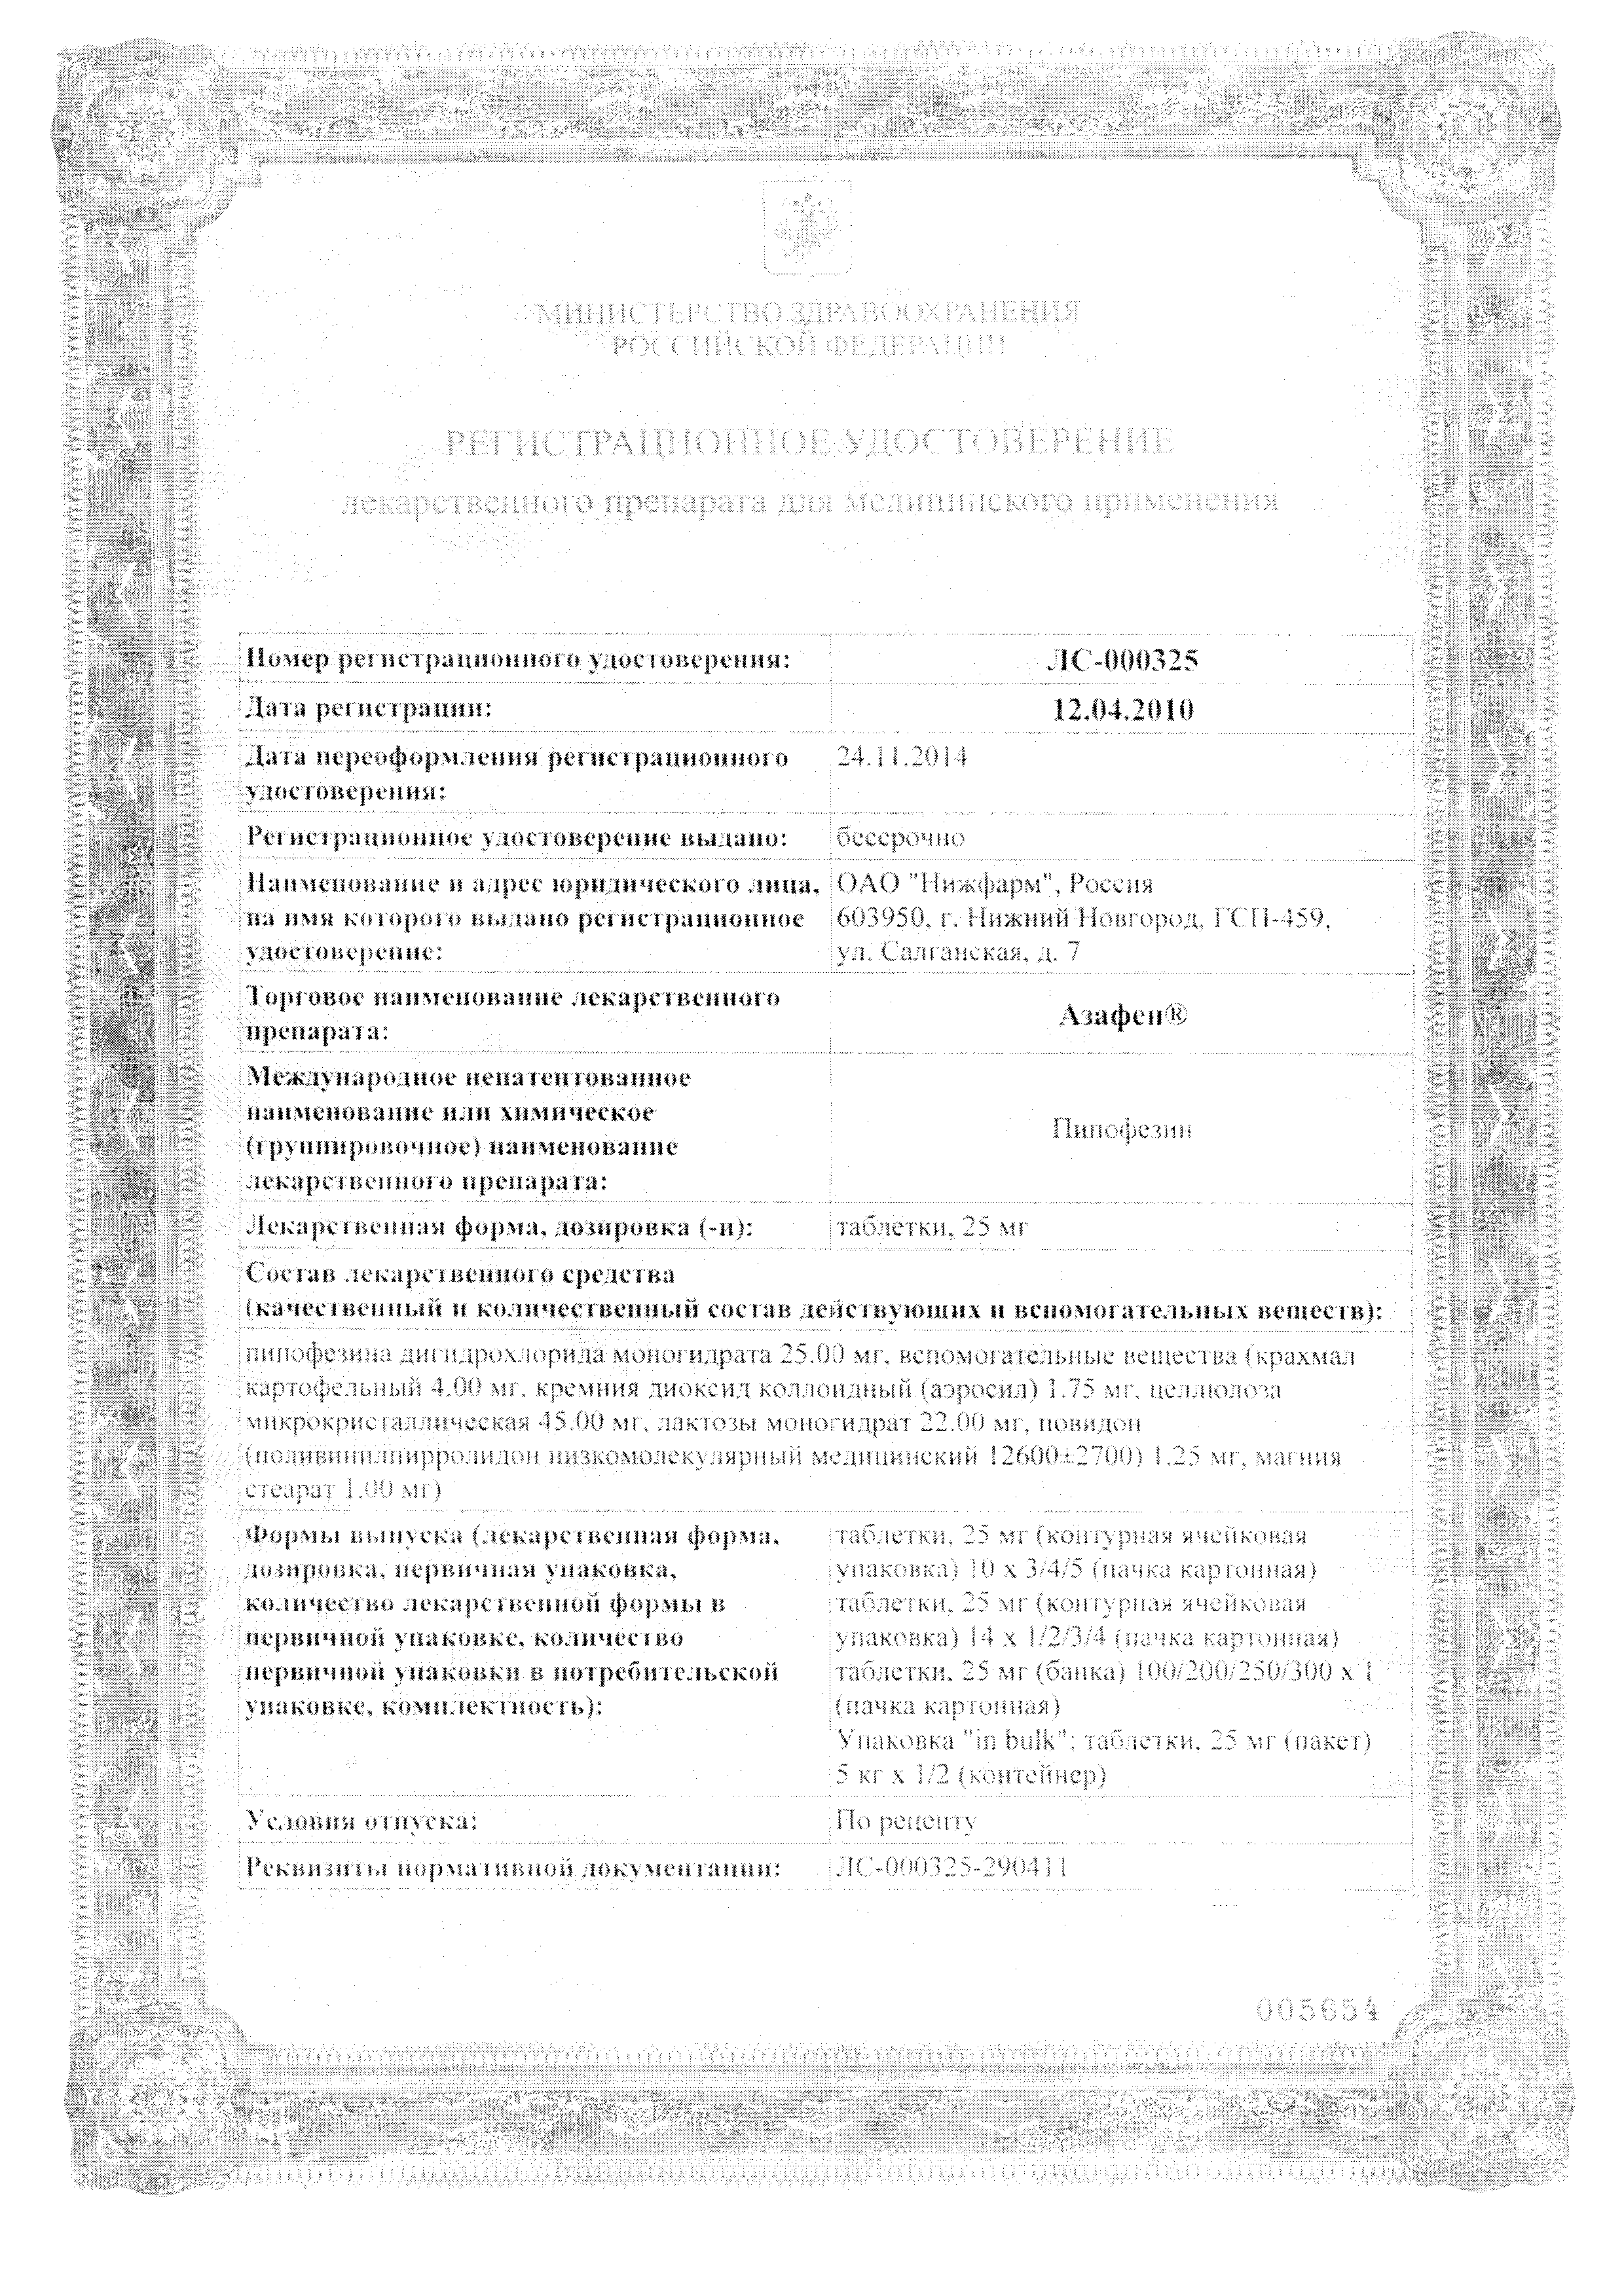 Азафен сертификат